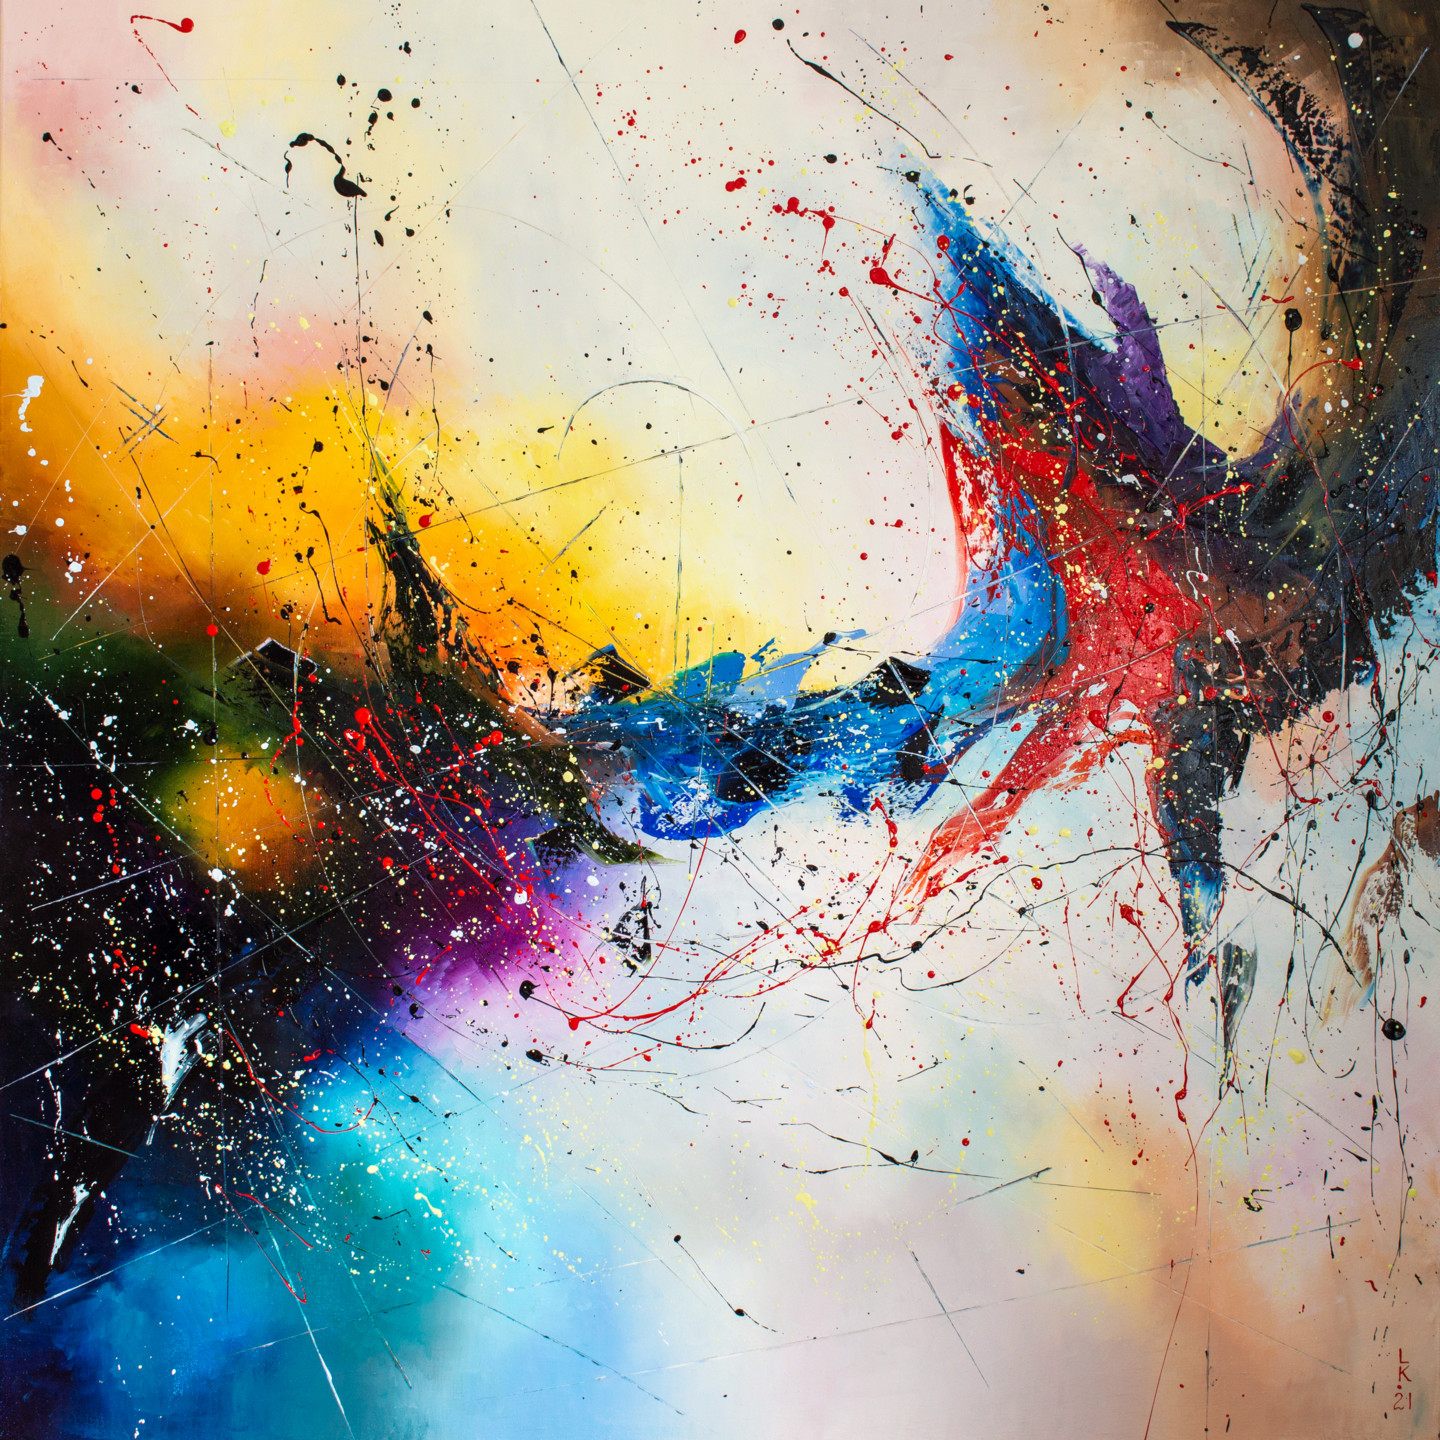 Galaxy Awakening, Painting by Liubov Kuptsova | Artmajeur